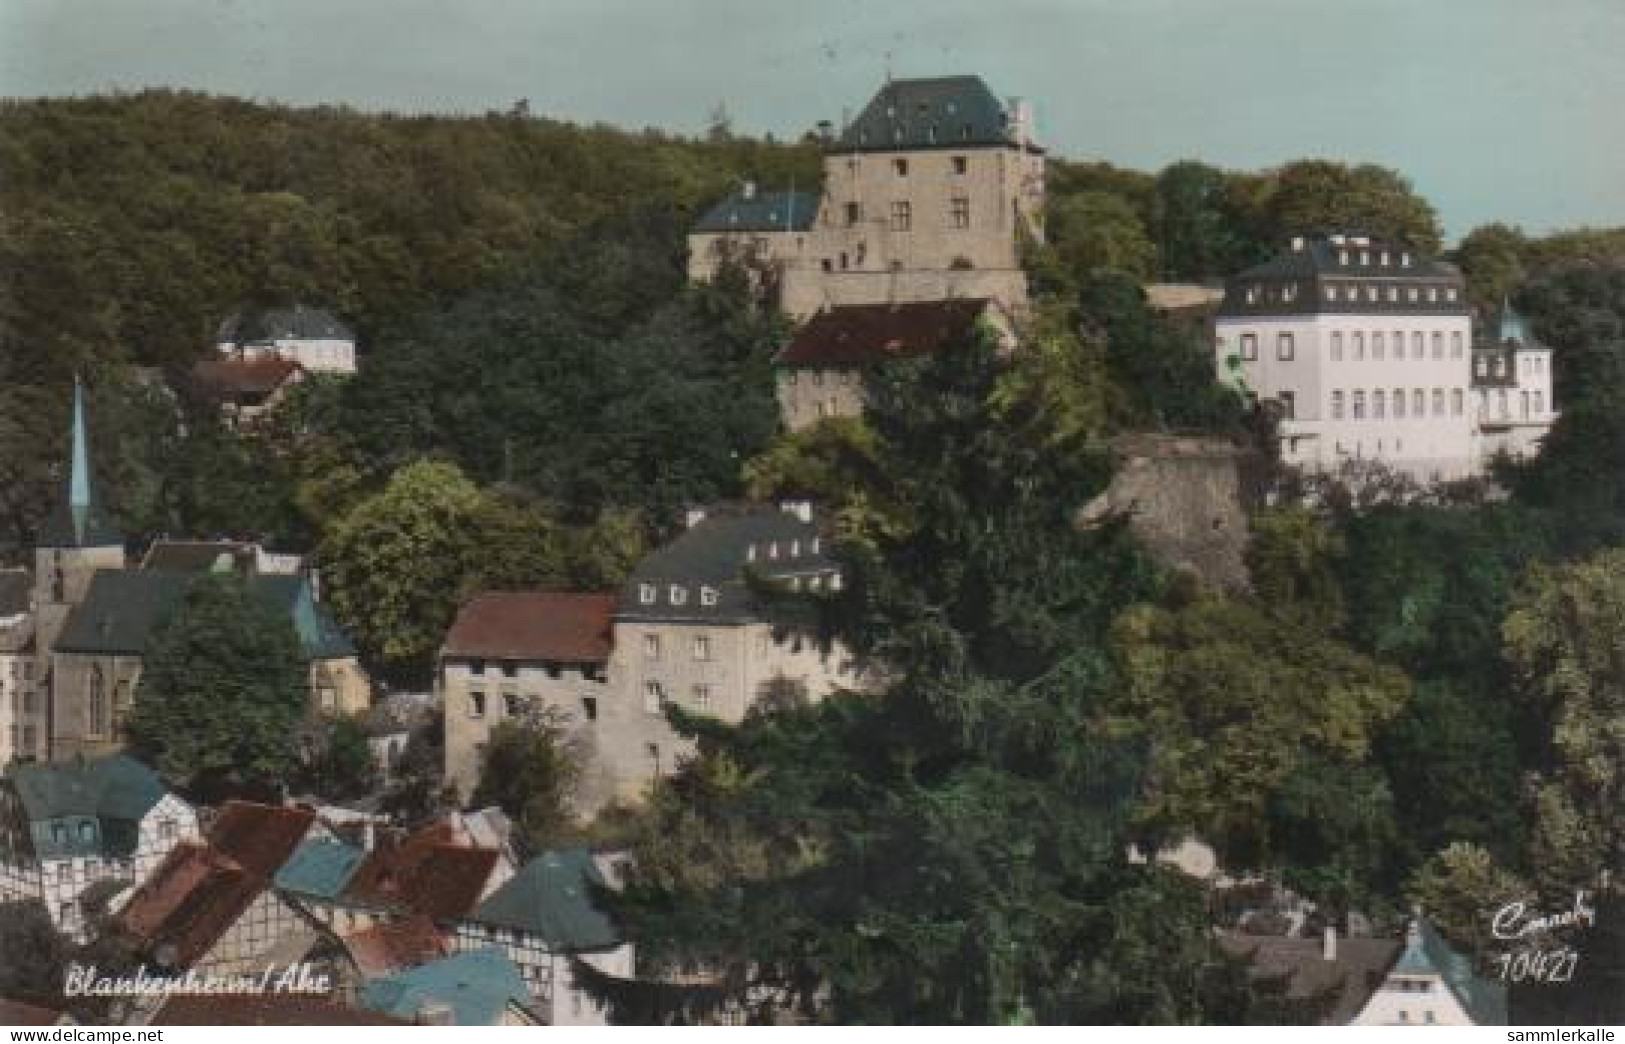 4017 - Blankenheim An Der Ahr Mit Burg - Ca. 1965 - Euskirchen